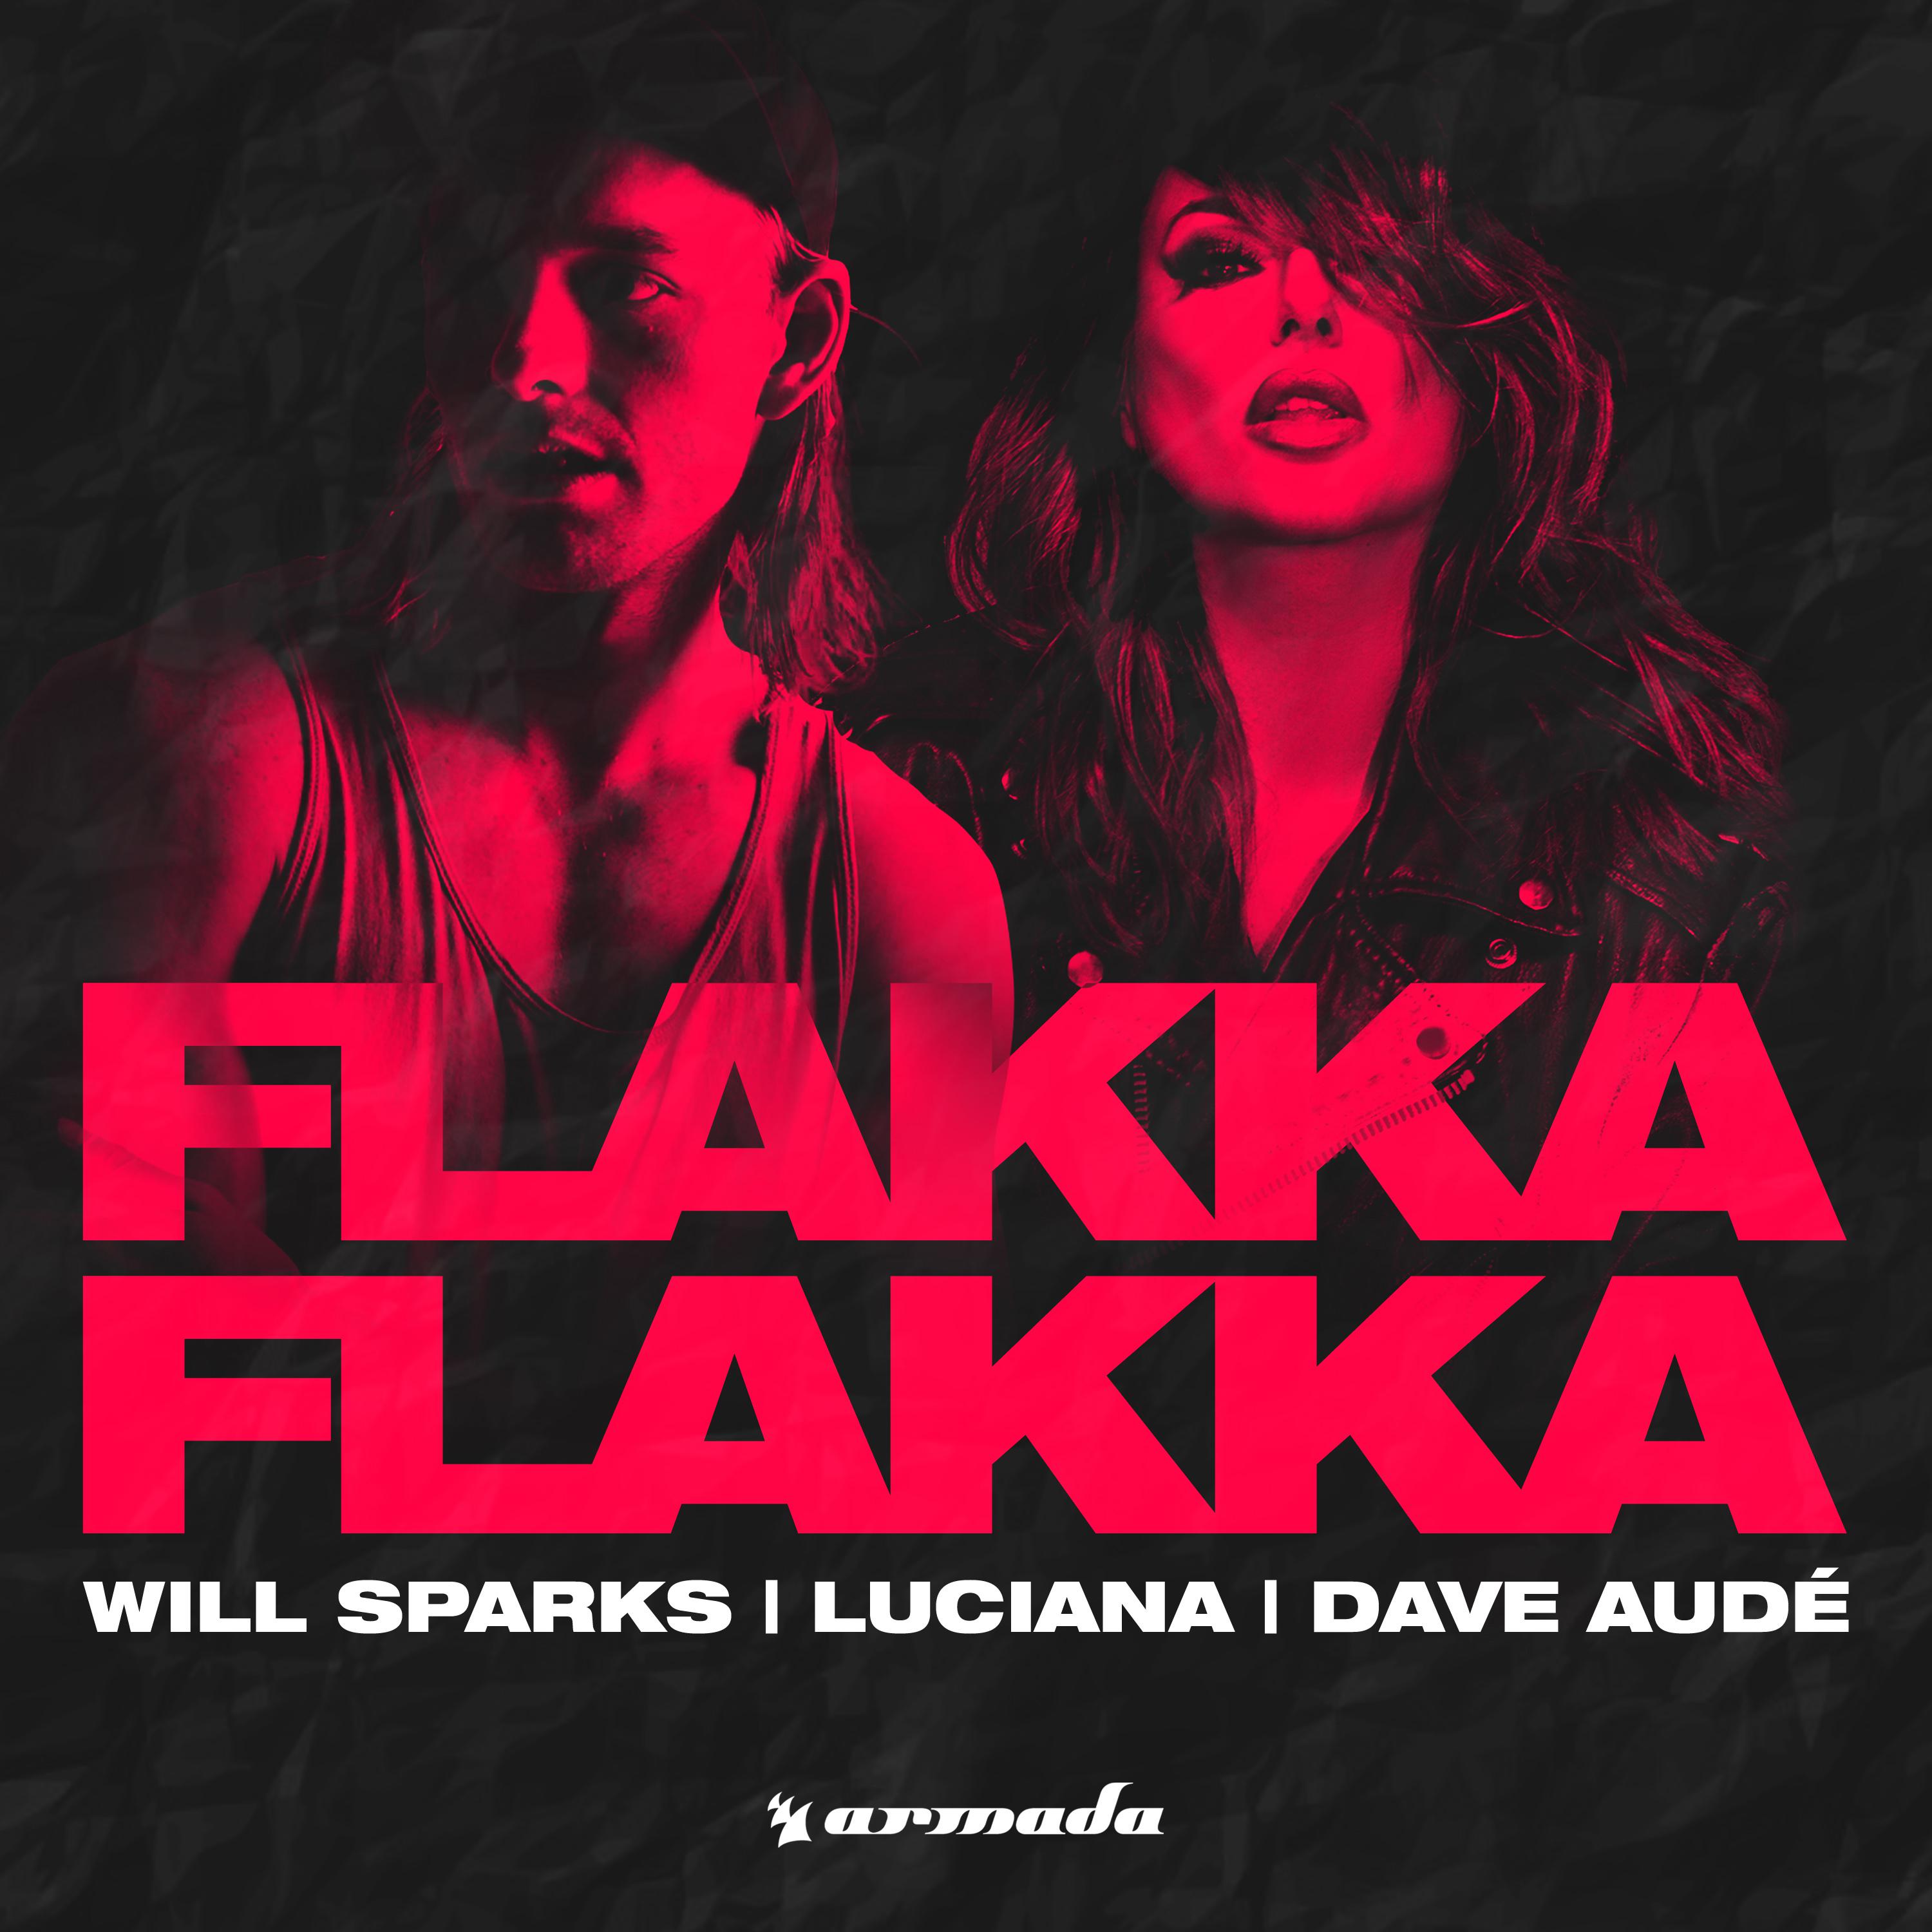 Flakka Flakka (Extended Mix)歌词 歌手Will Sparks / Luciana / Dave Audé-专辑Flakka Flakka-单曲《Flakka Flakka (Extended Mix)》LRC歌词下载